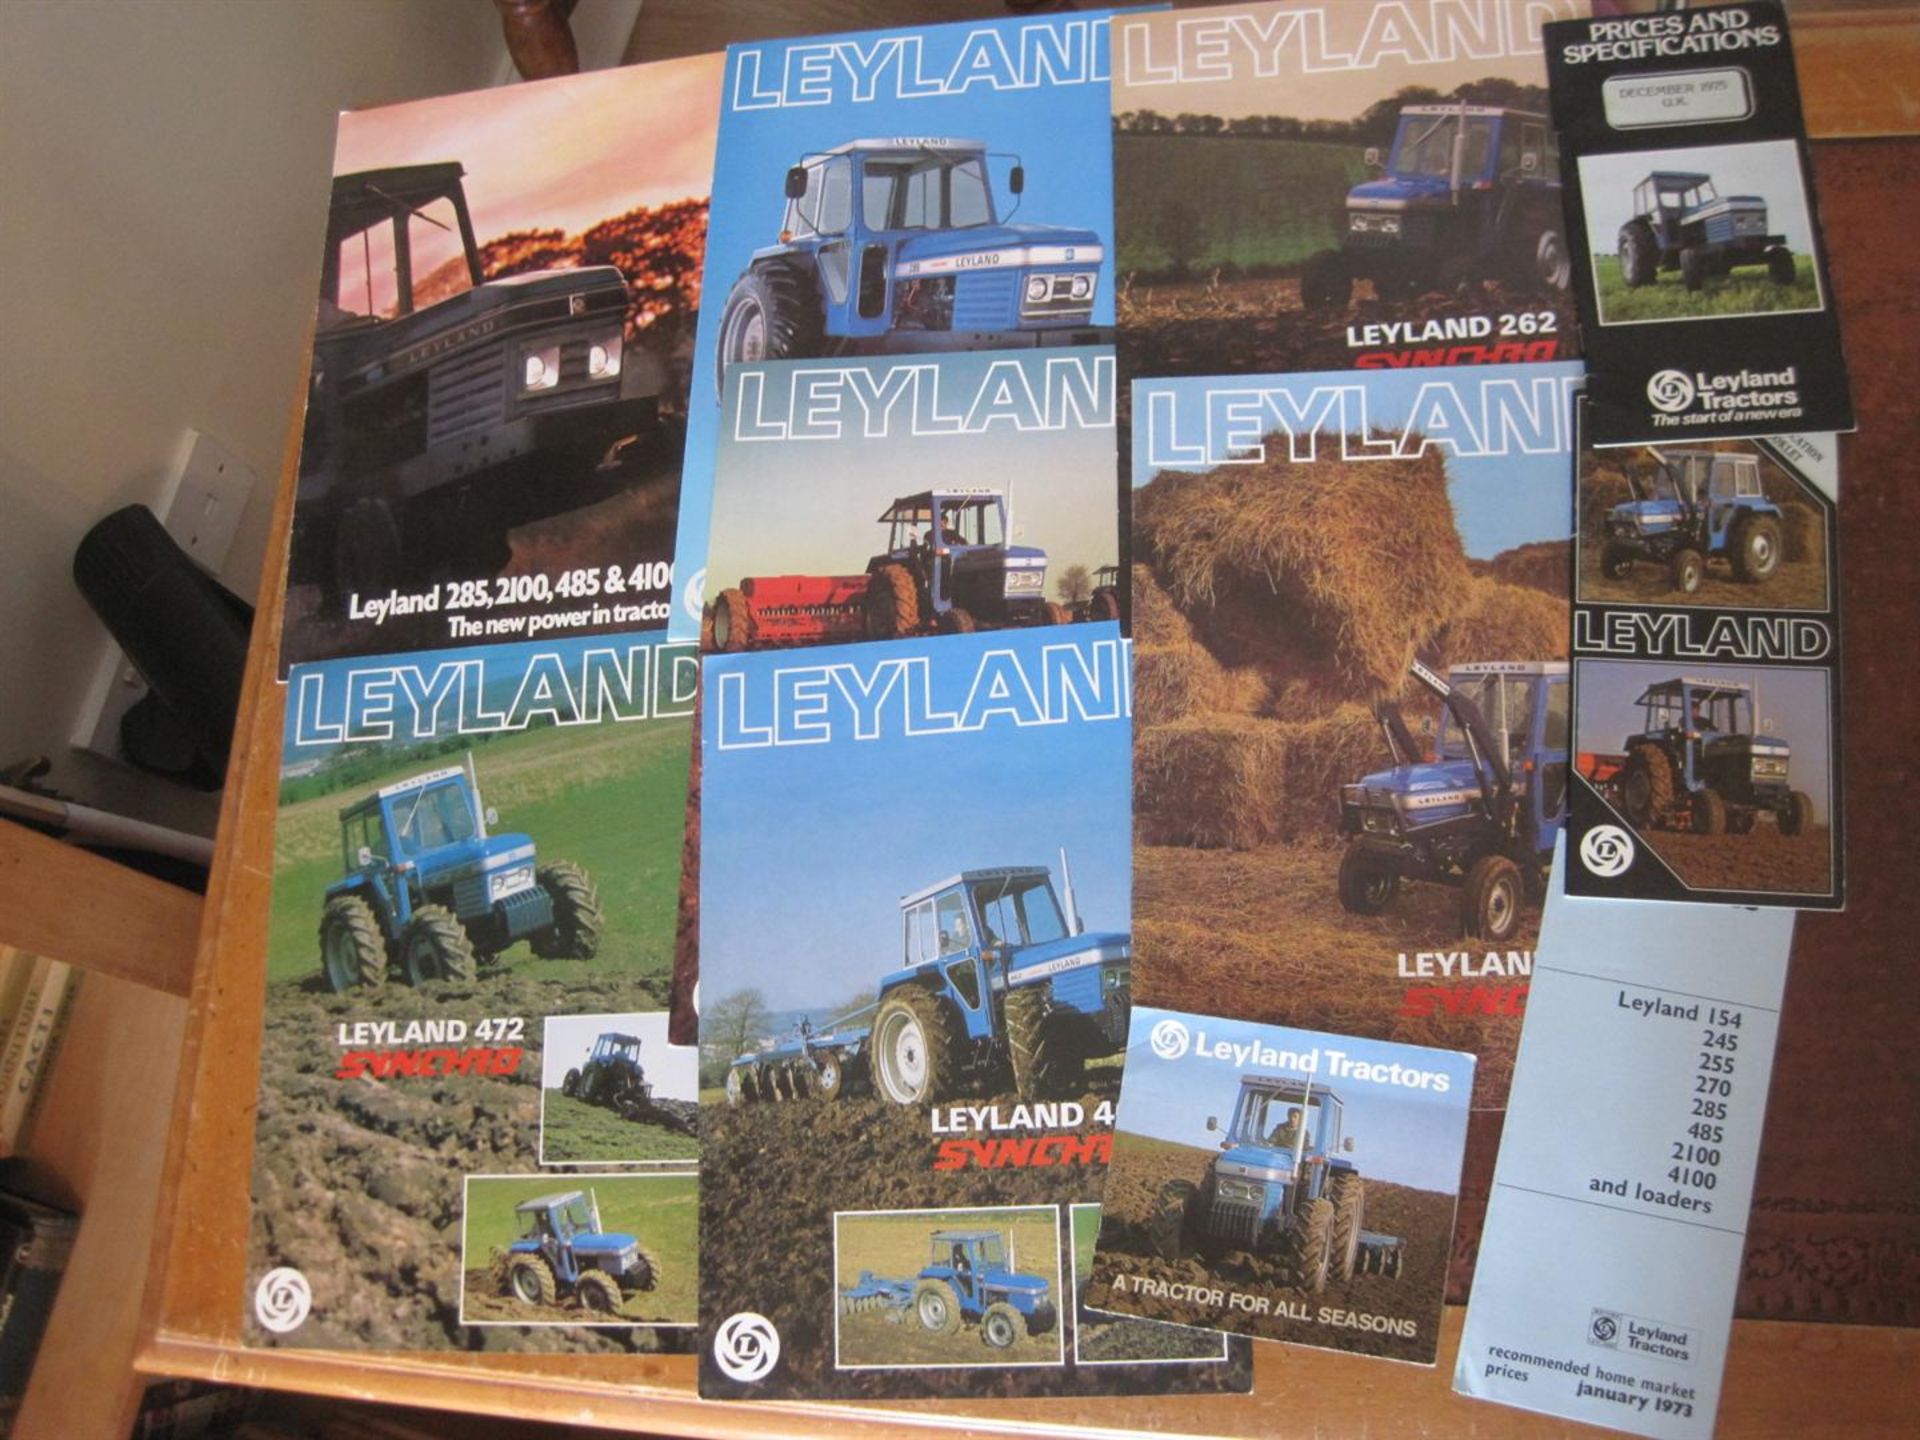 Leyland tractor brochures & price lists, 1970s (11)